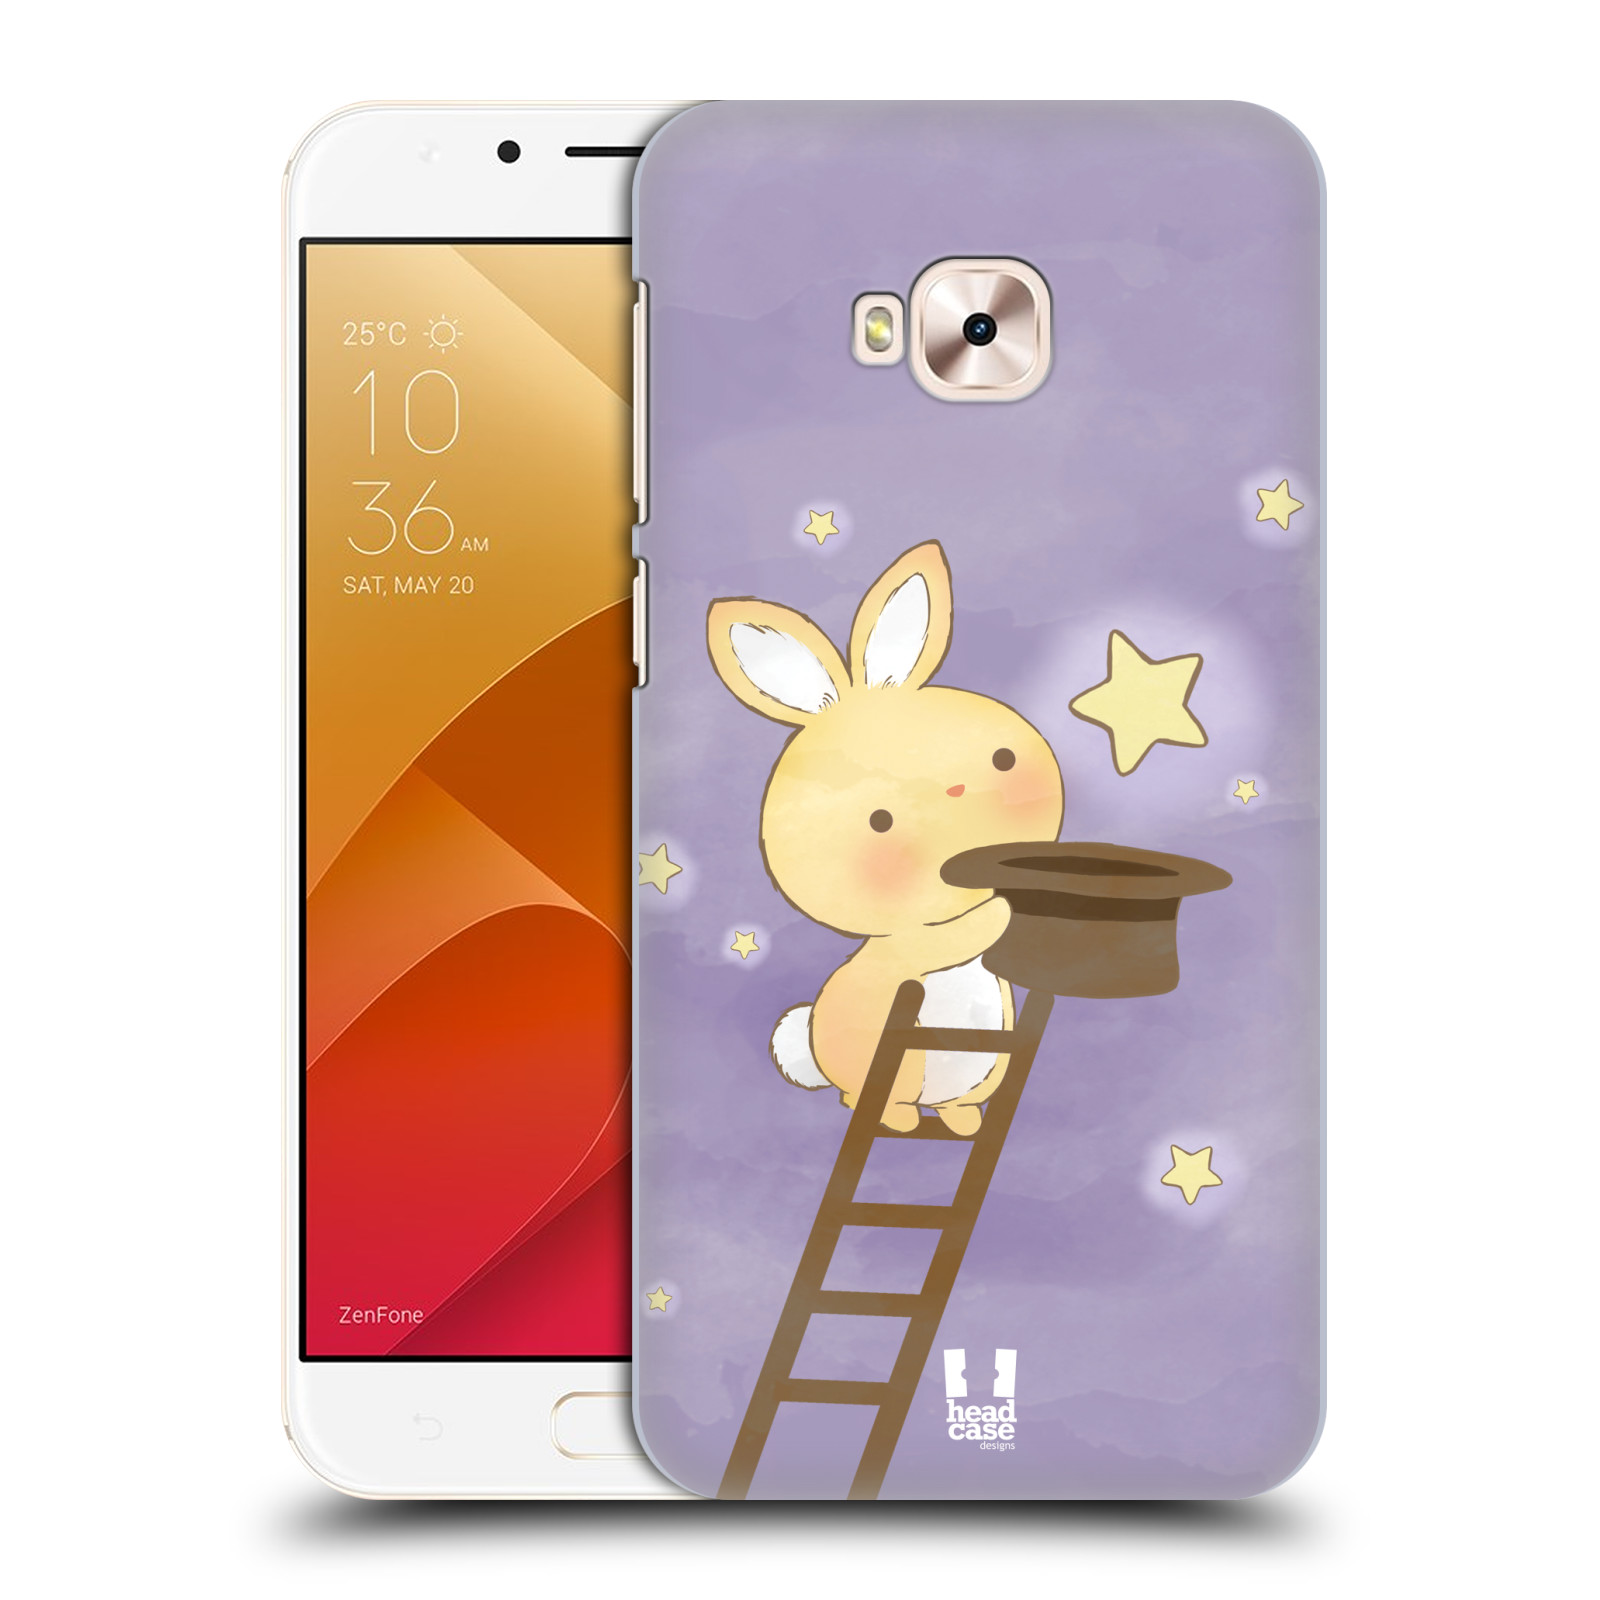 HEAD CASE plastový obal na mobil Asus Zenfone 4 Selfie Pro ZD552KL vzor králíček a hvězdy fialová